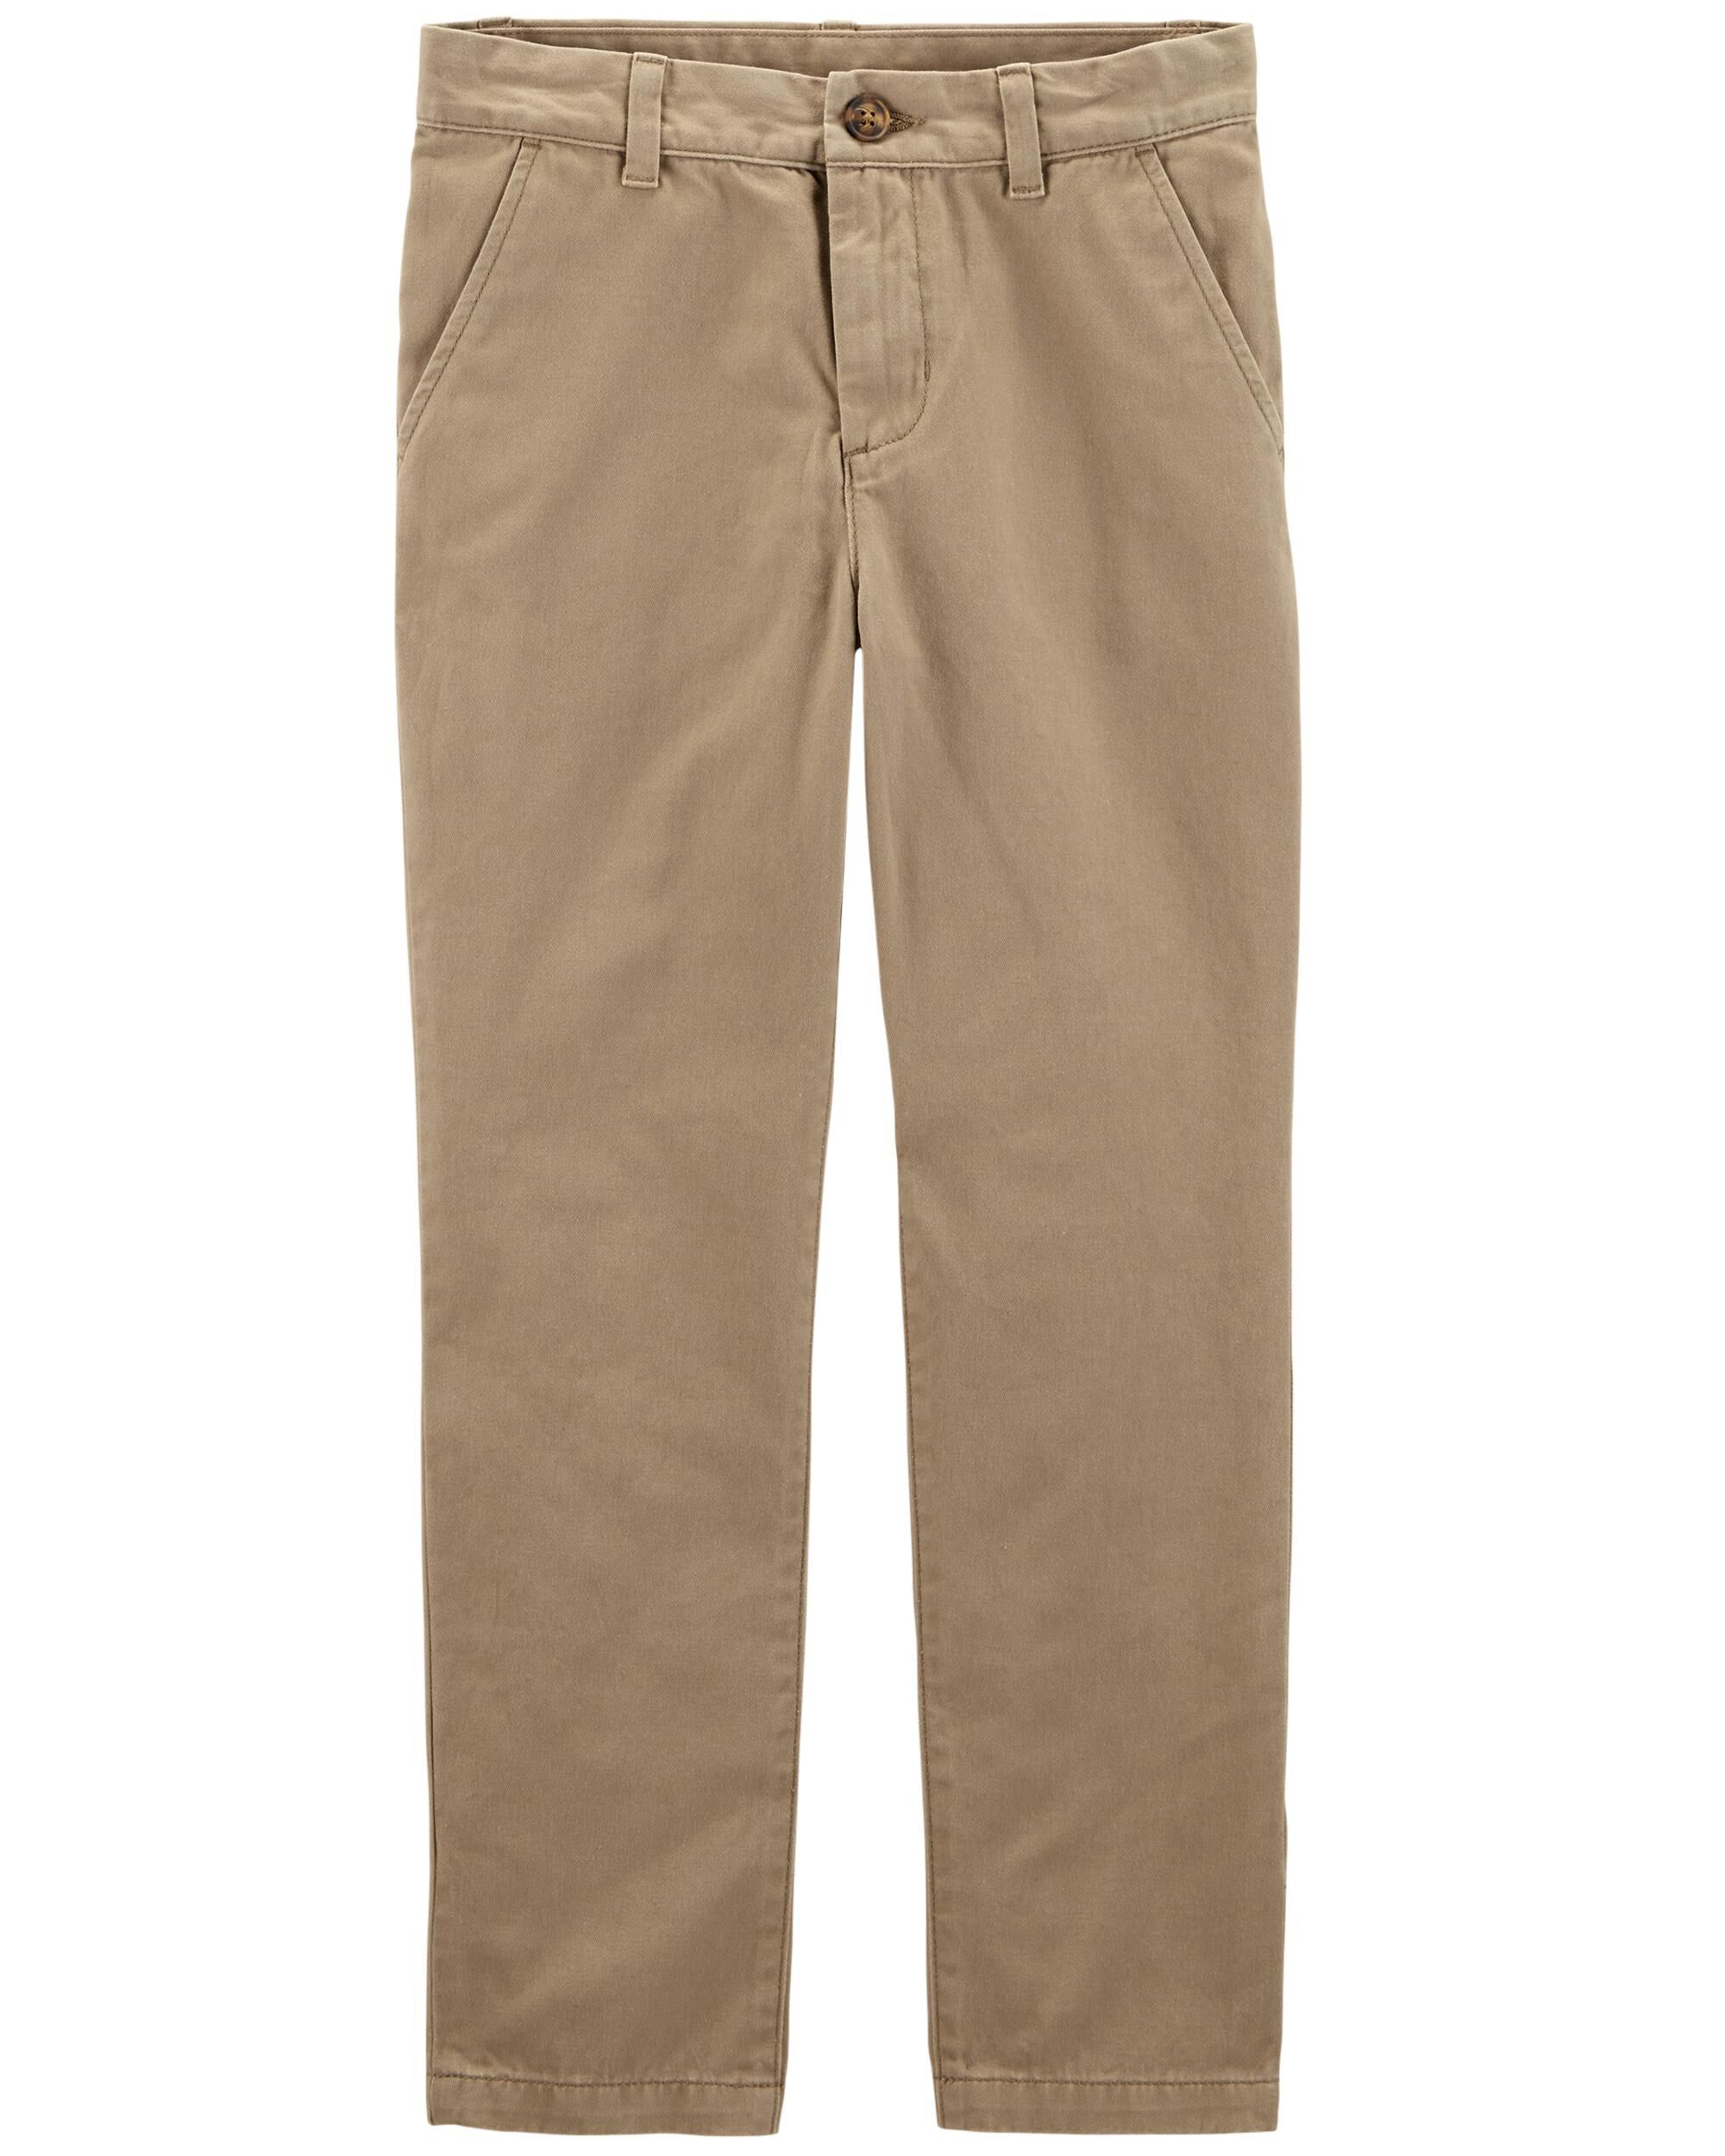 Uniform Pants | carters.com